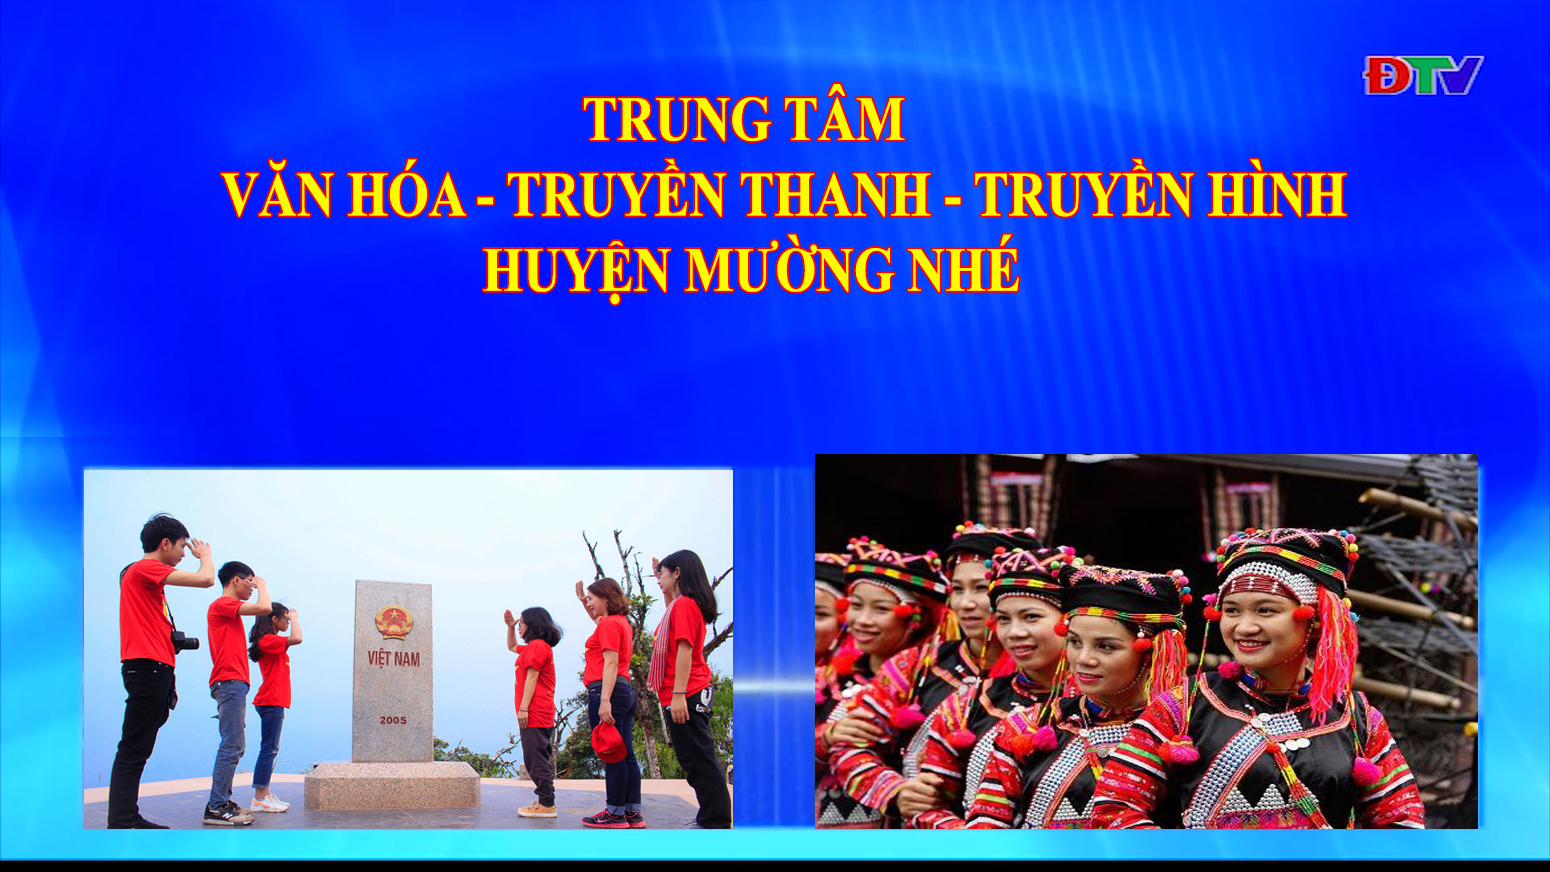 Trung tâm Văn hóa Truyền thanh Truyền hình huyện Mường Nhé (Ngày 24-9-2020)